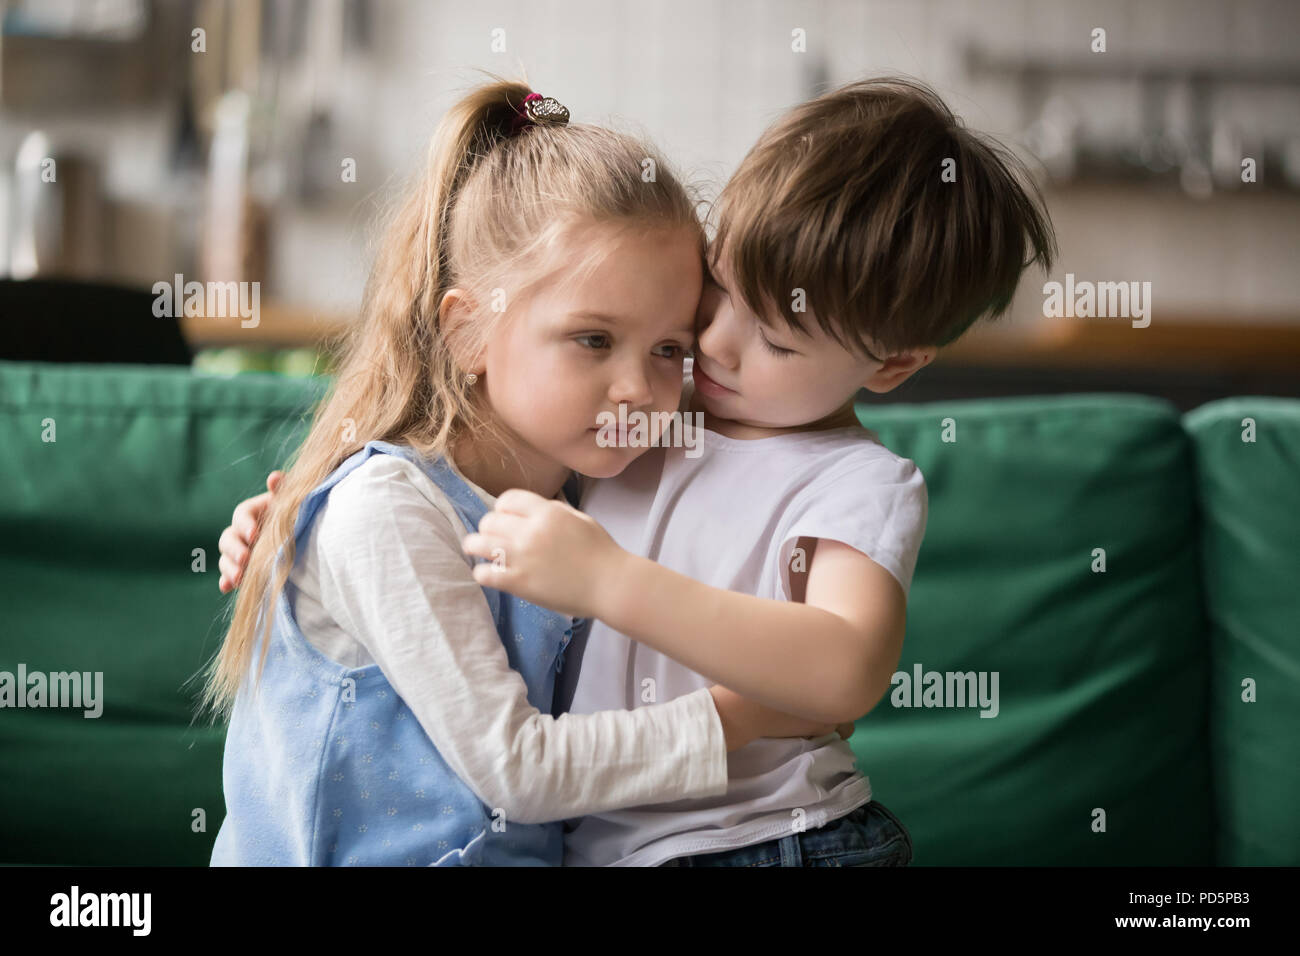 Petit garçon frère consolant et soutenir upset girl embracing Banque D'Images